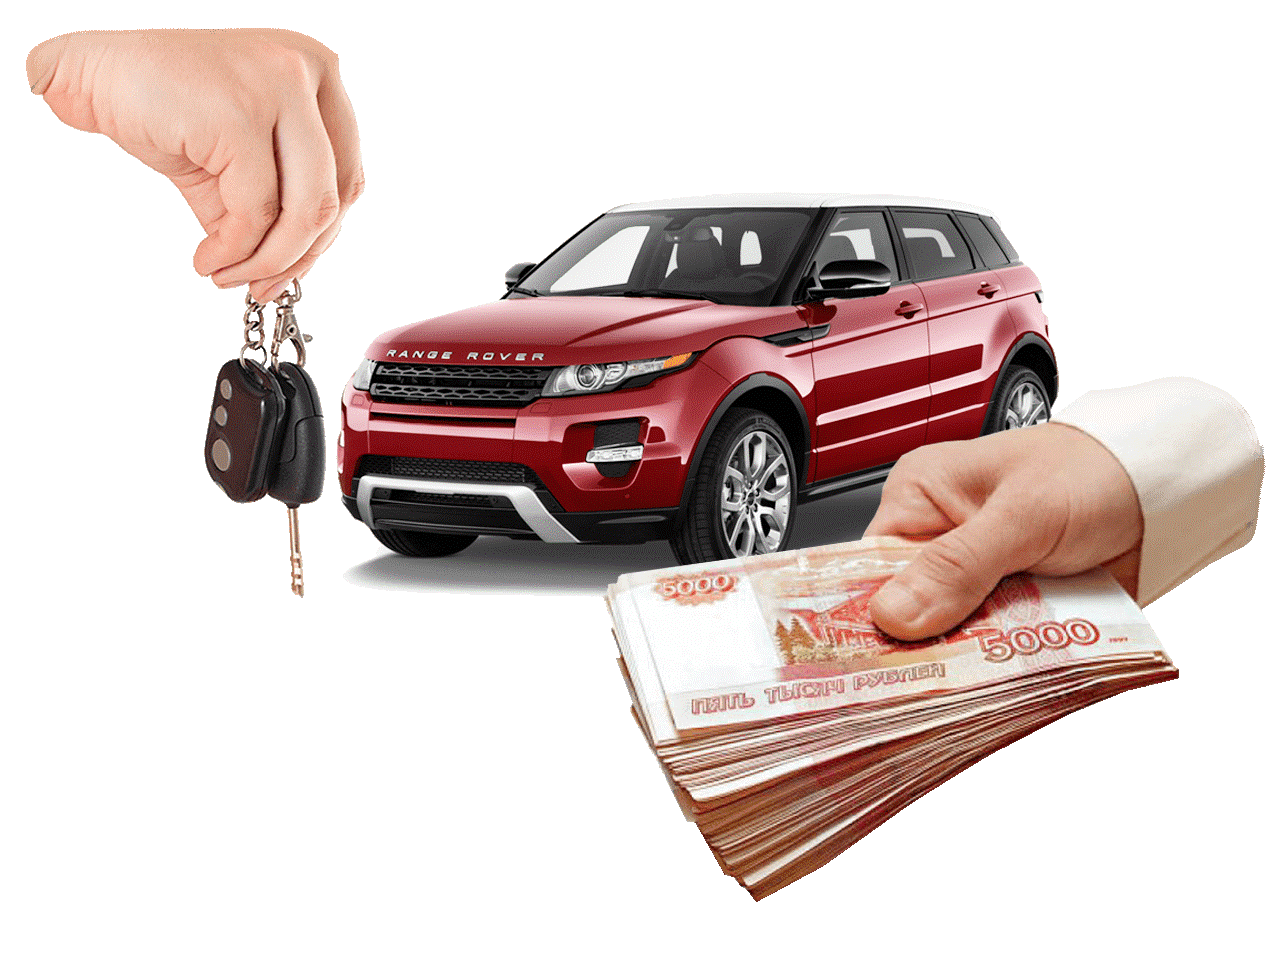 Выкуп авто в Ярославле — Пример старта кампаний